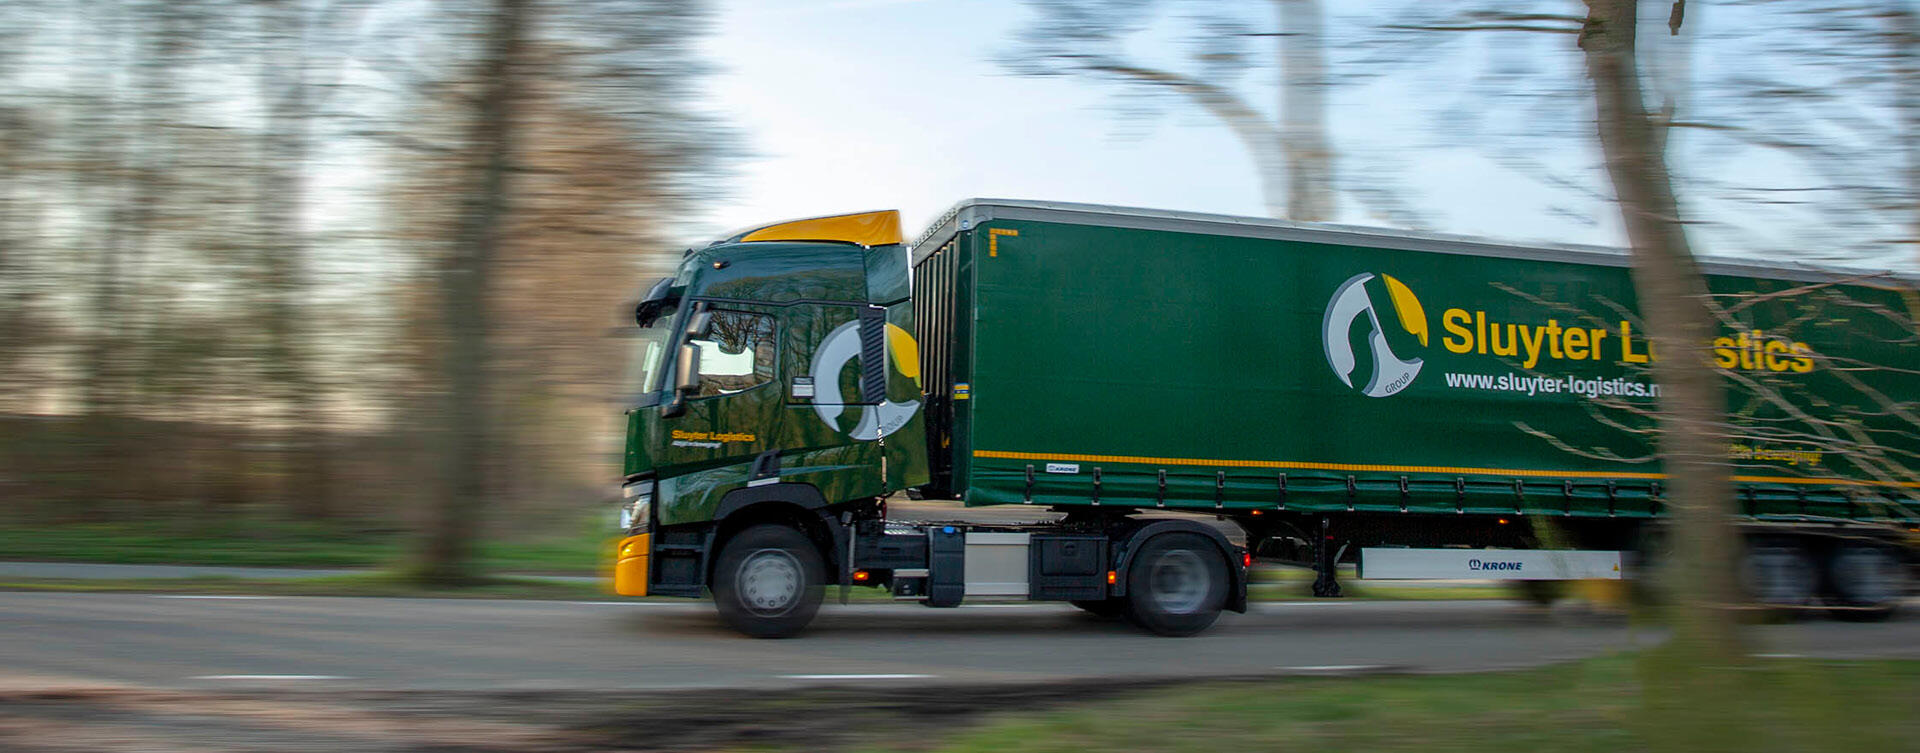 Vijf Renault Trucks T Sleeper Cabs voor Sluyter Logistics